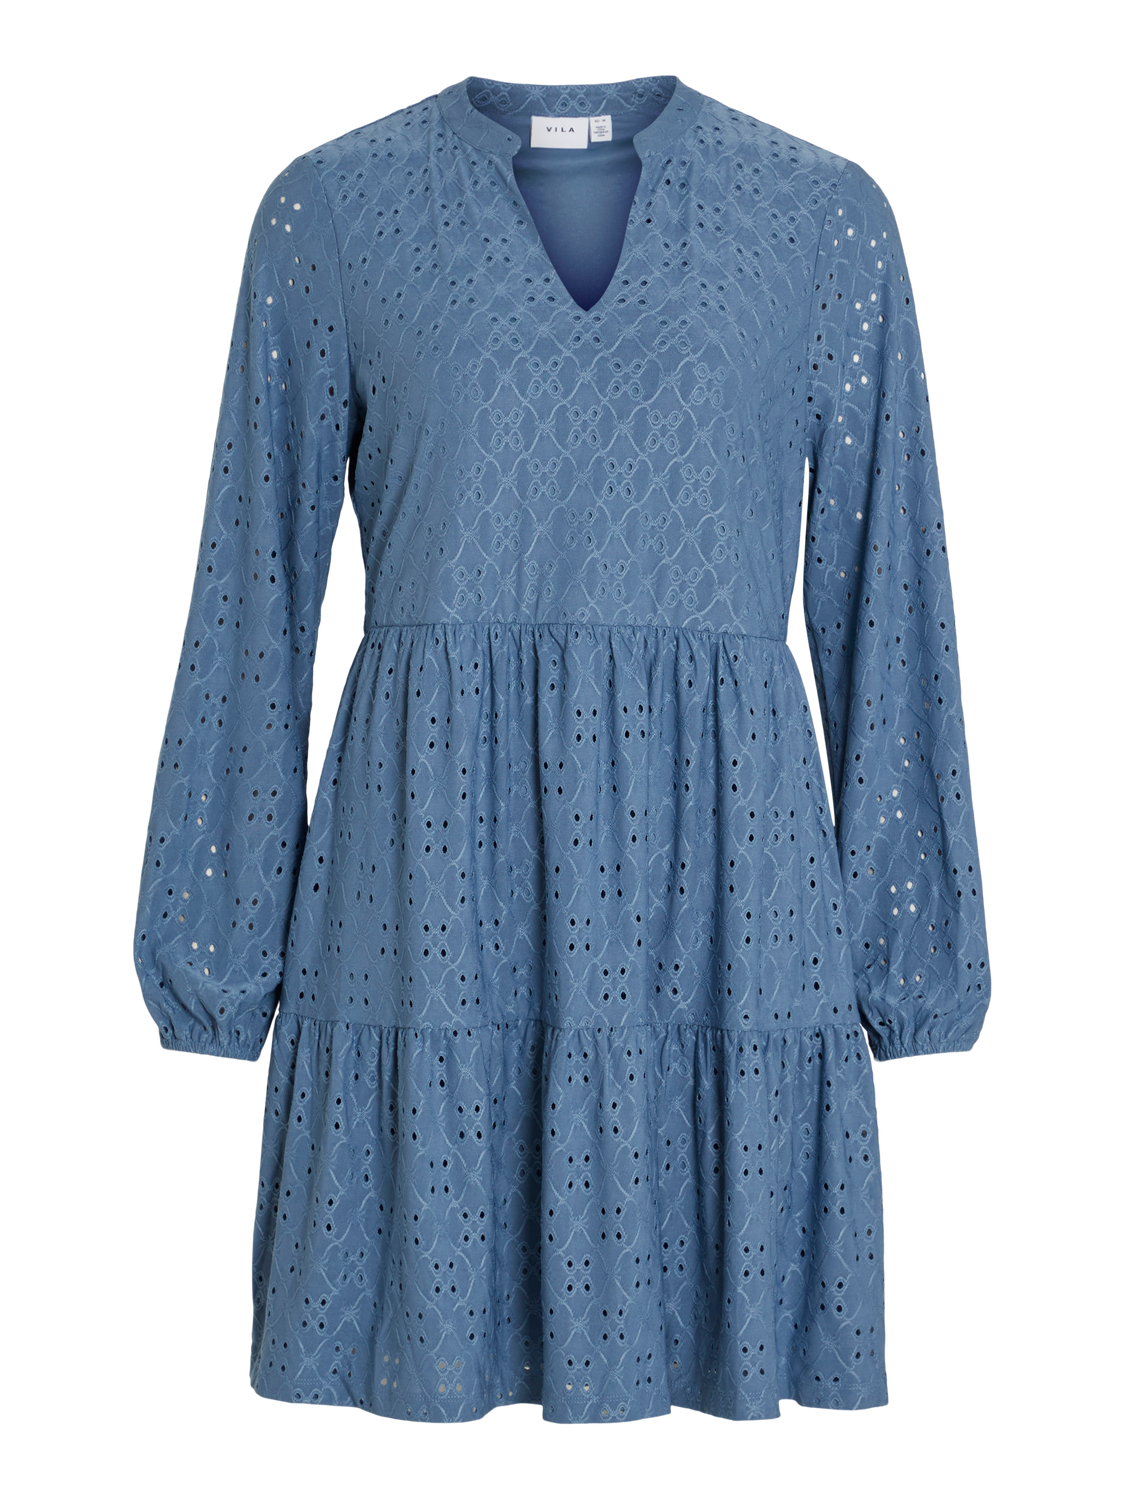 VIKAWA Dress - Coronet Blue